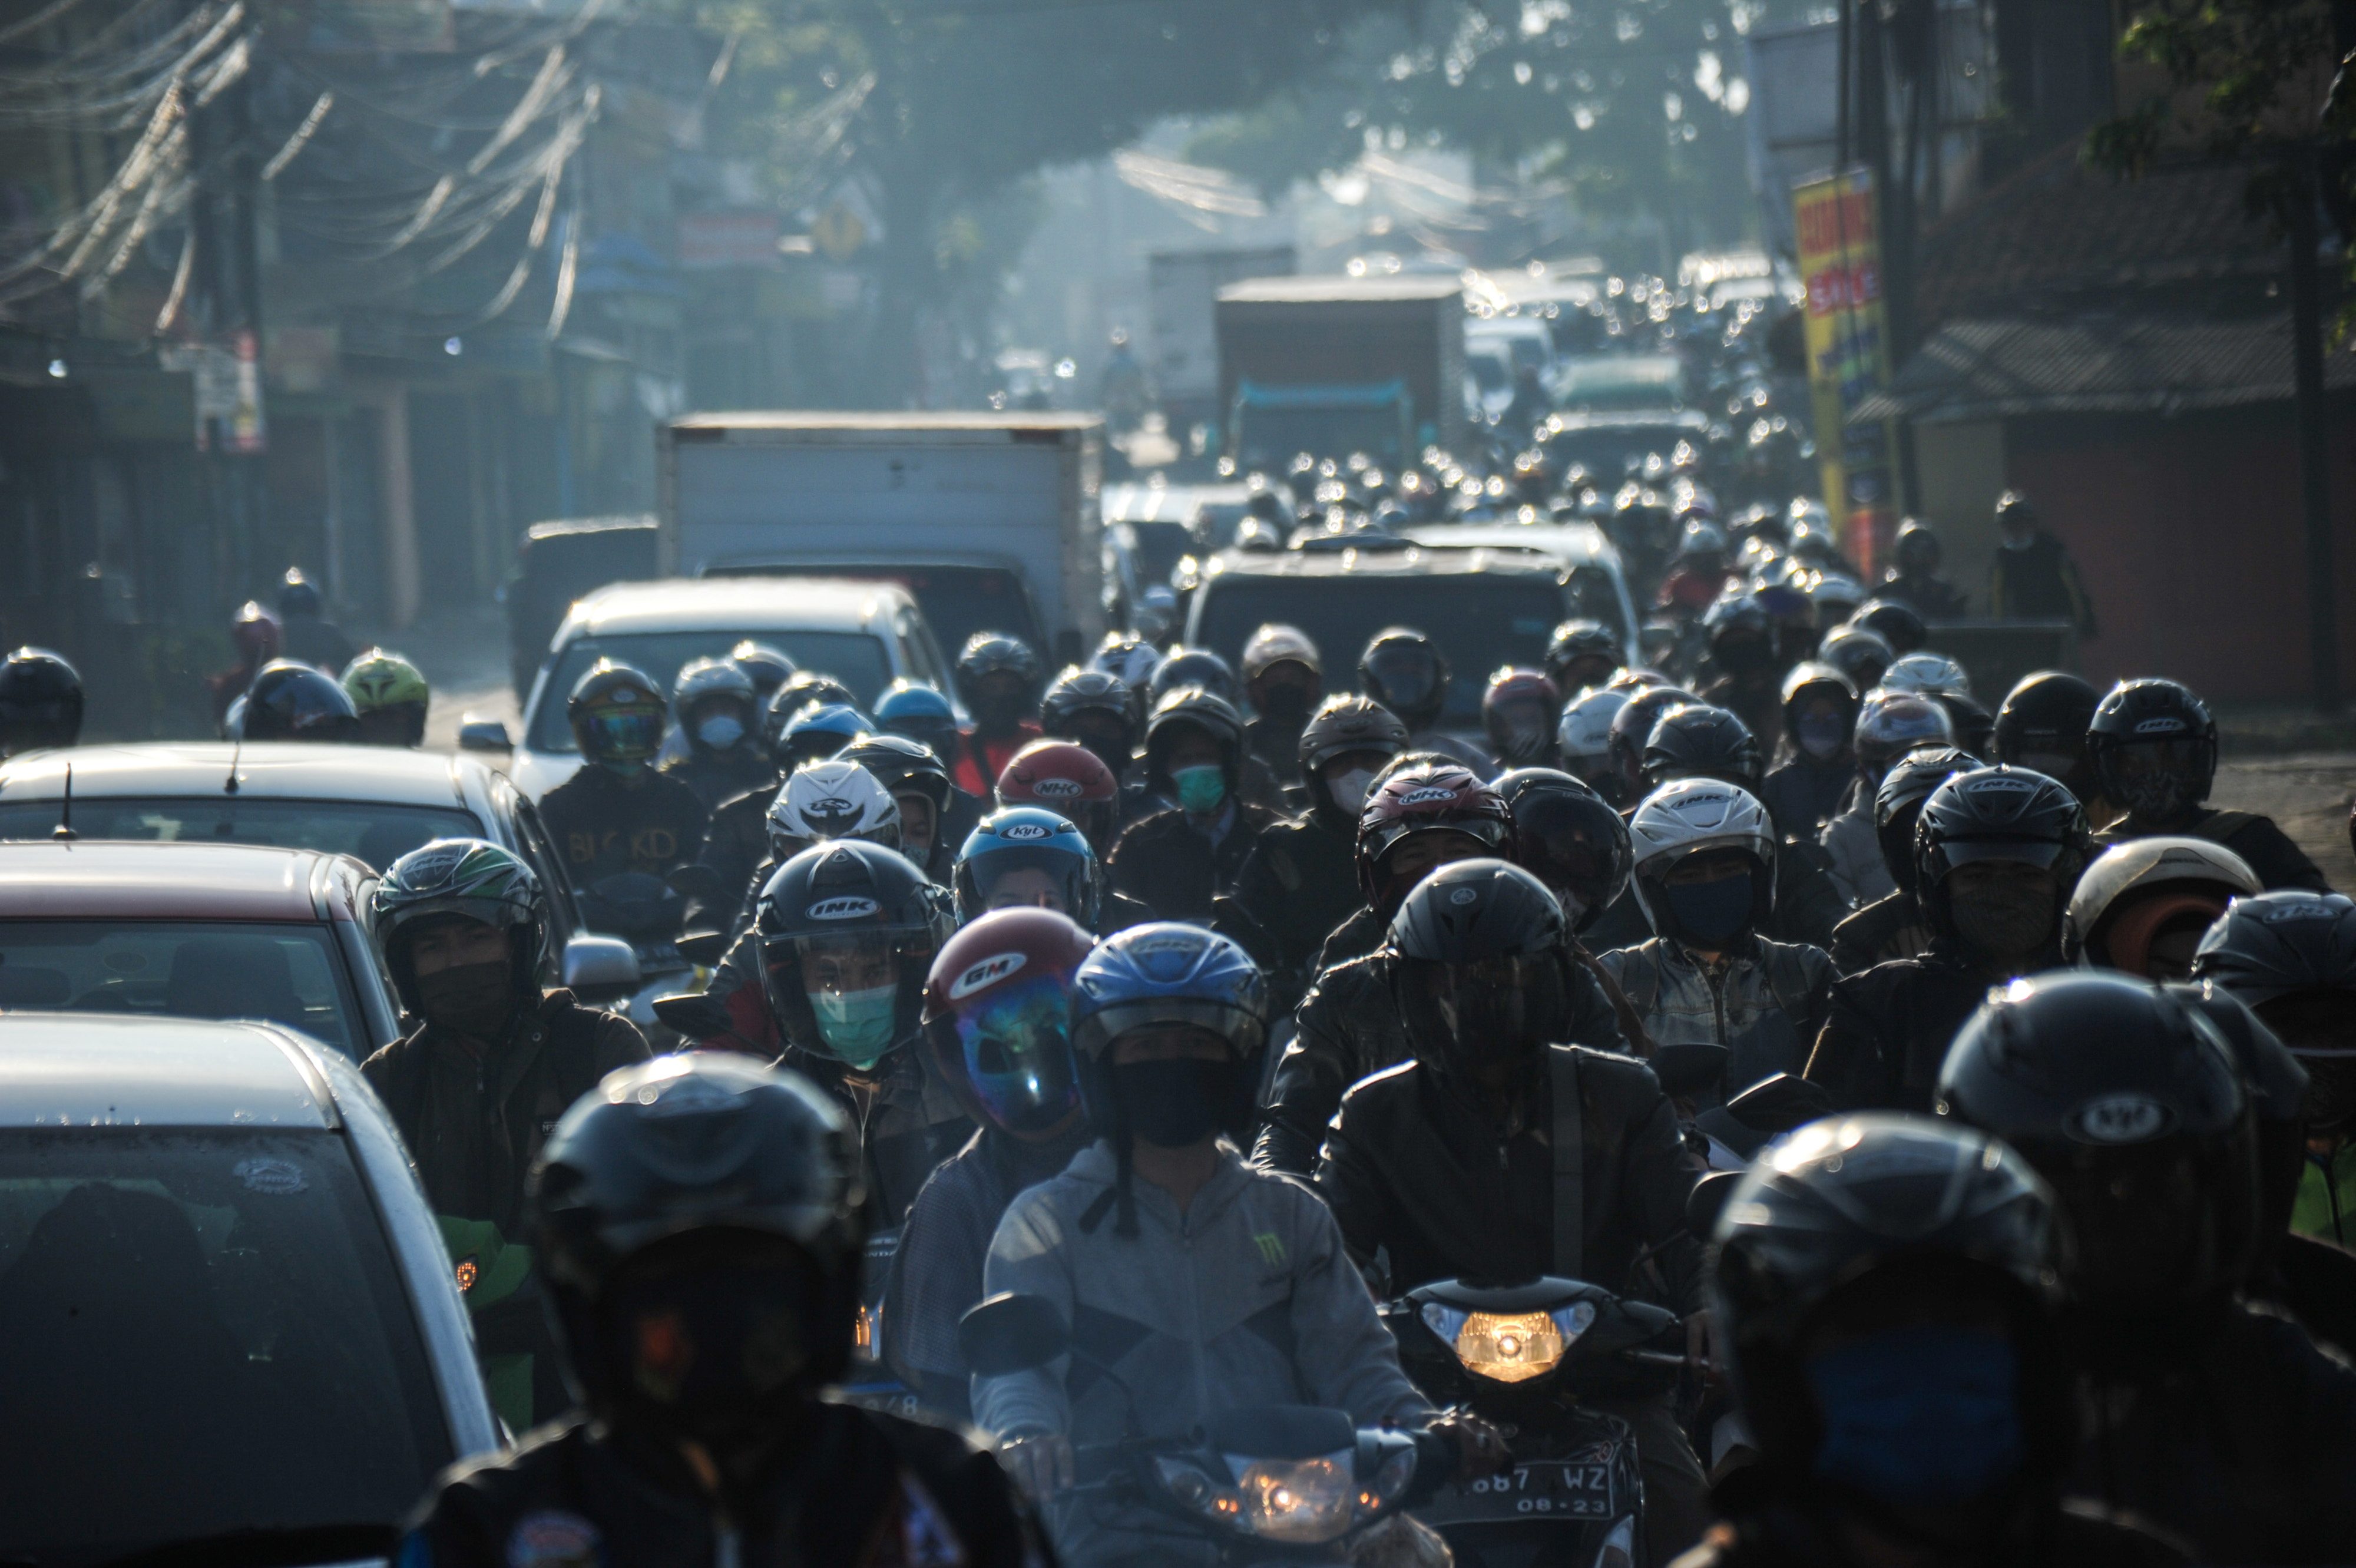 Indonesia cancels hajj pilgrimage again due to coronavirus concerns